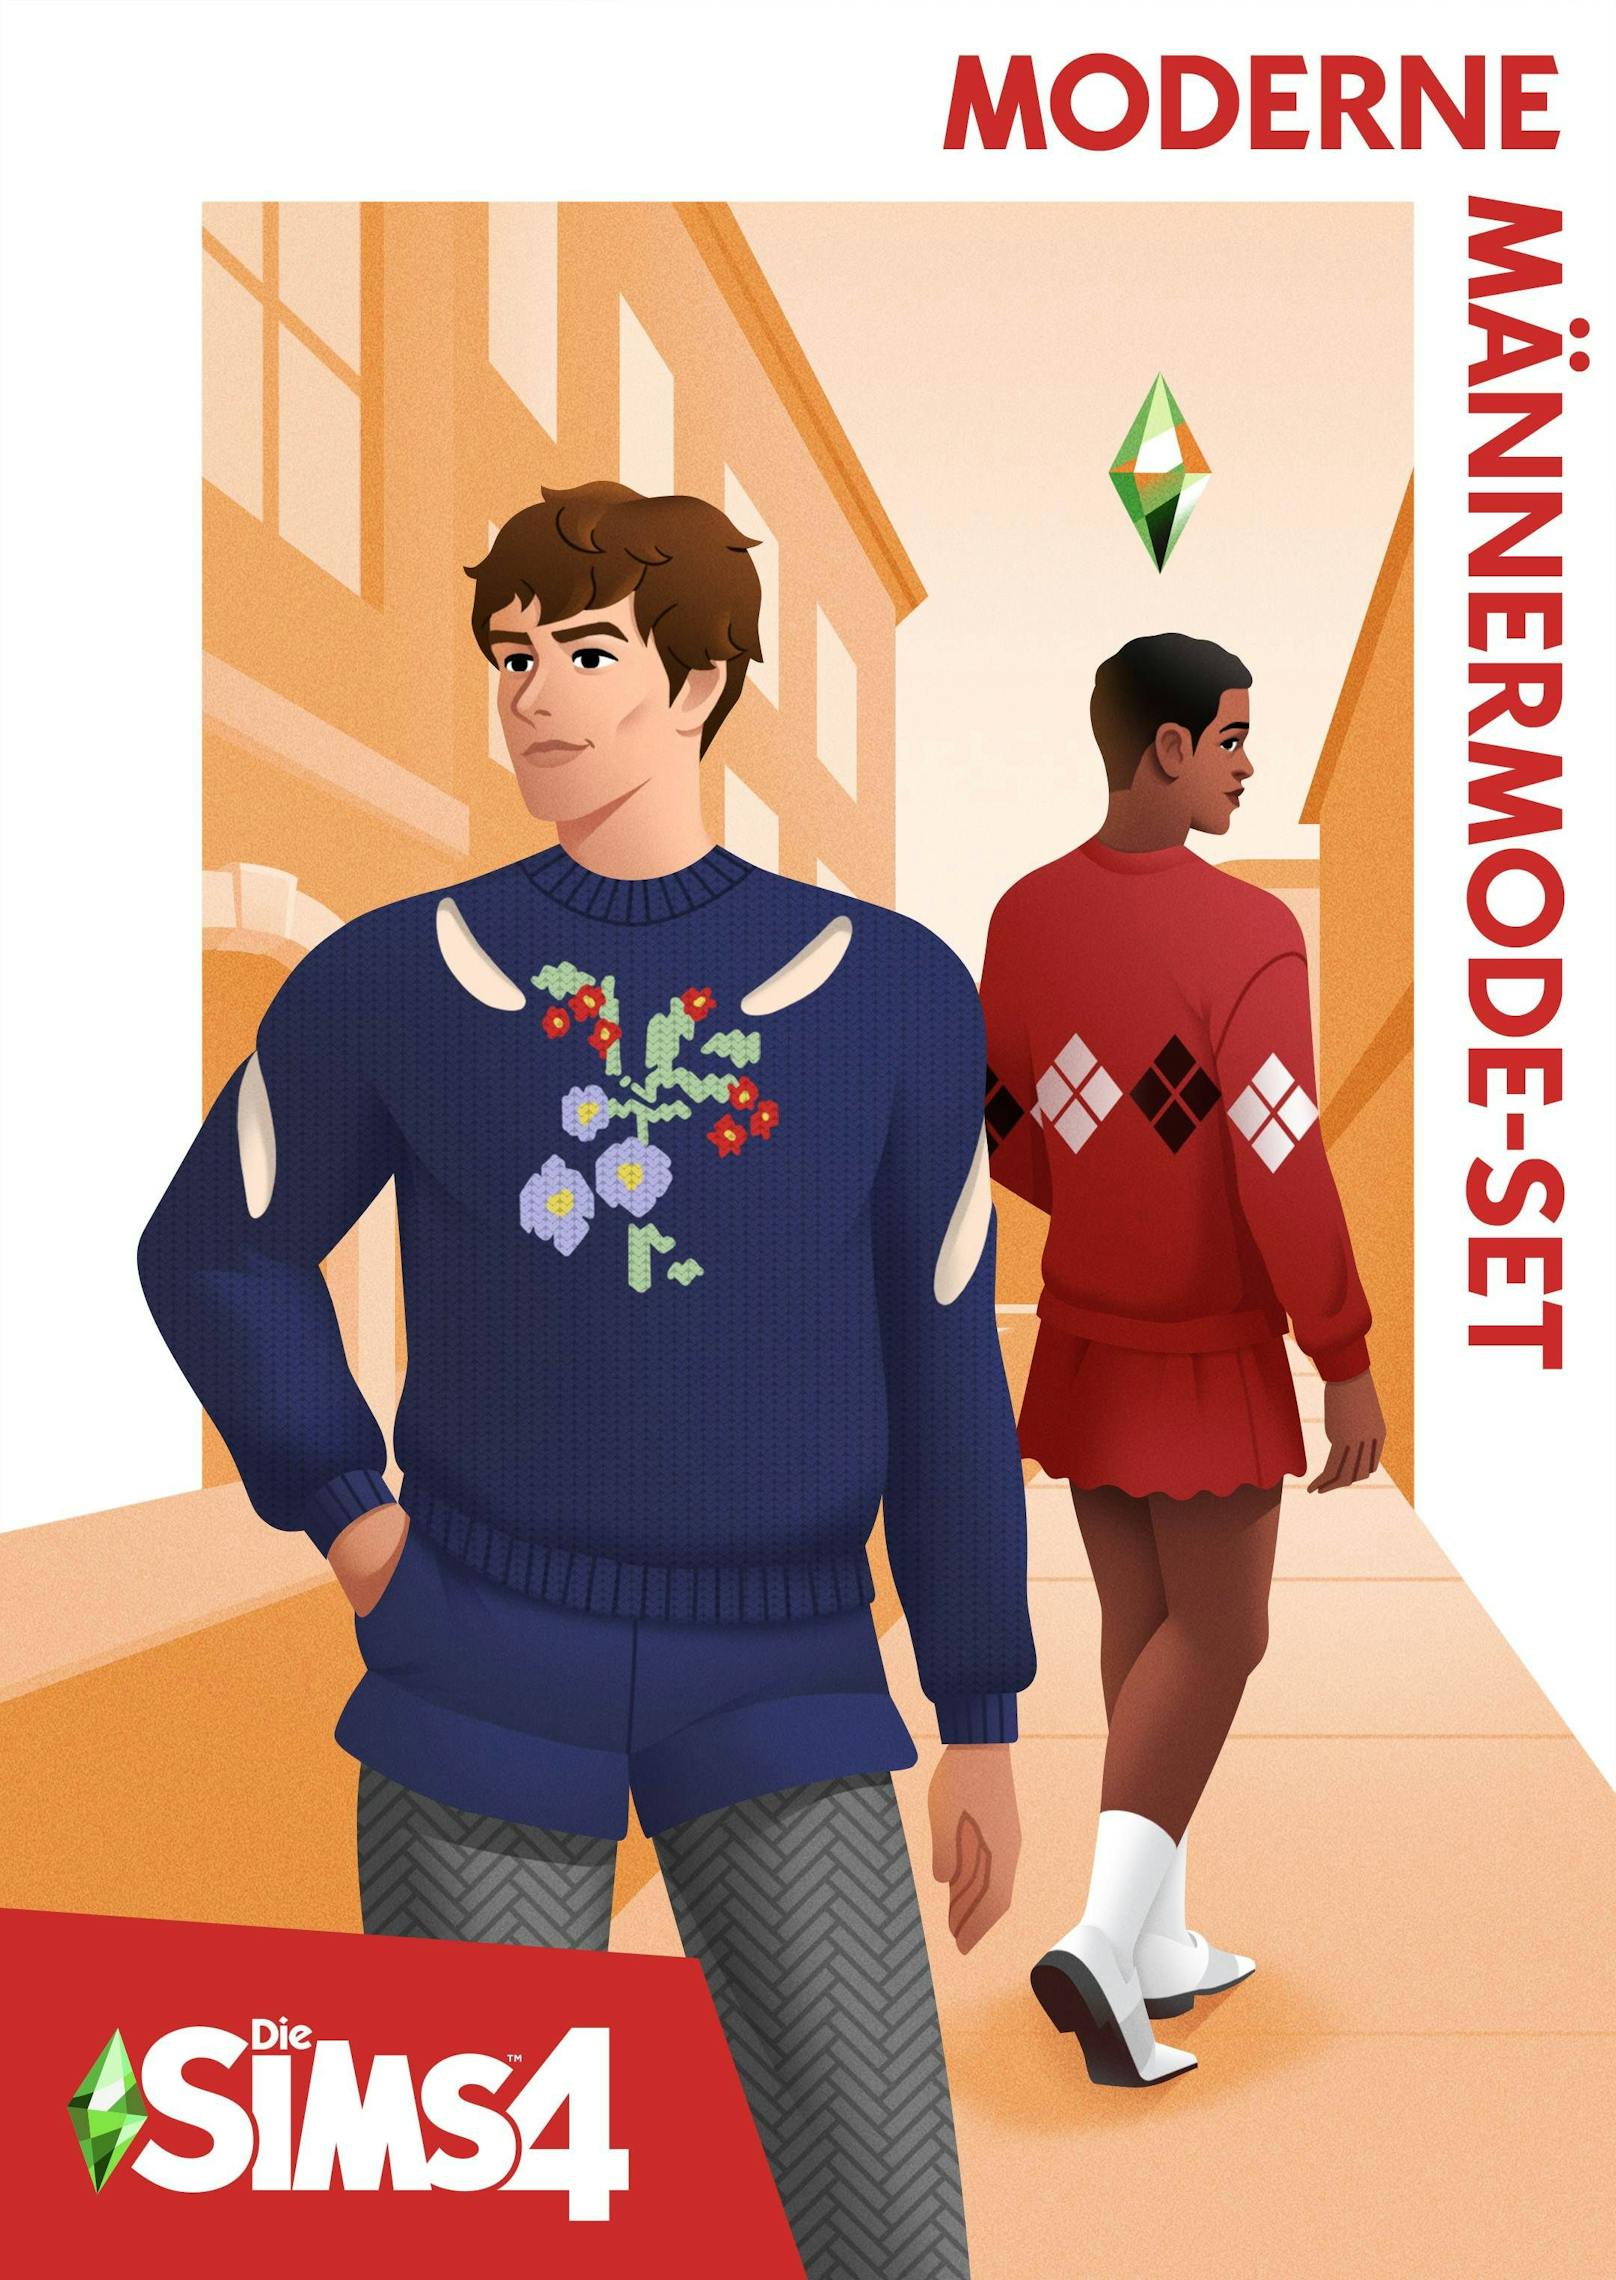 "Die Sims 4 Moderne Männermode-Set" ist ab sofort erhältlich.